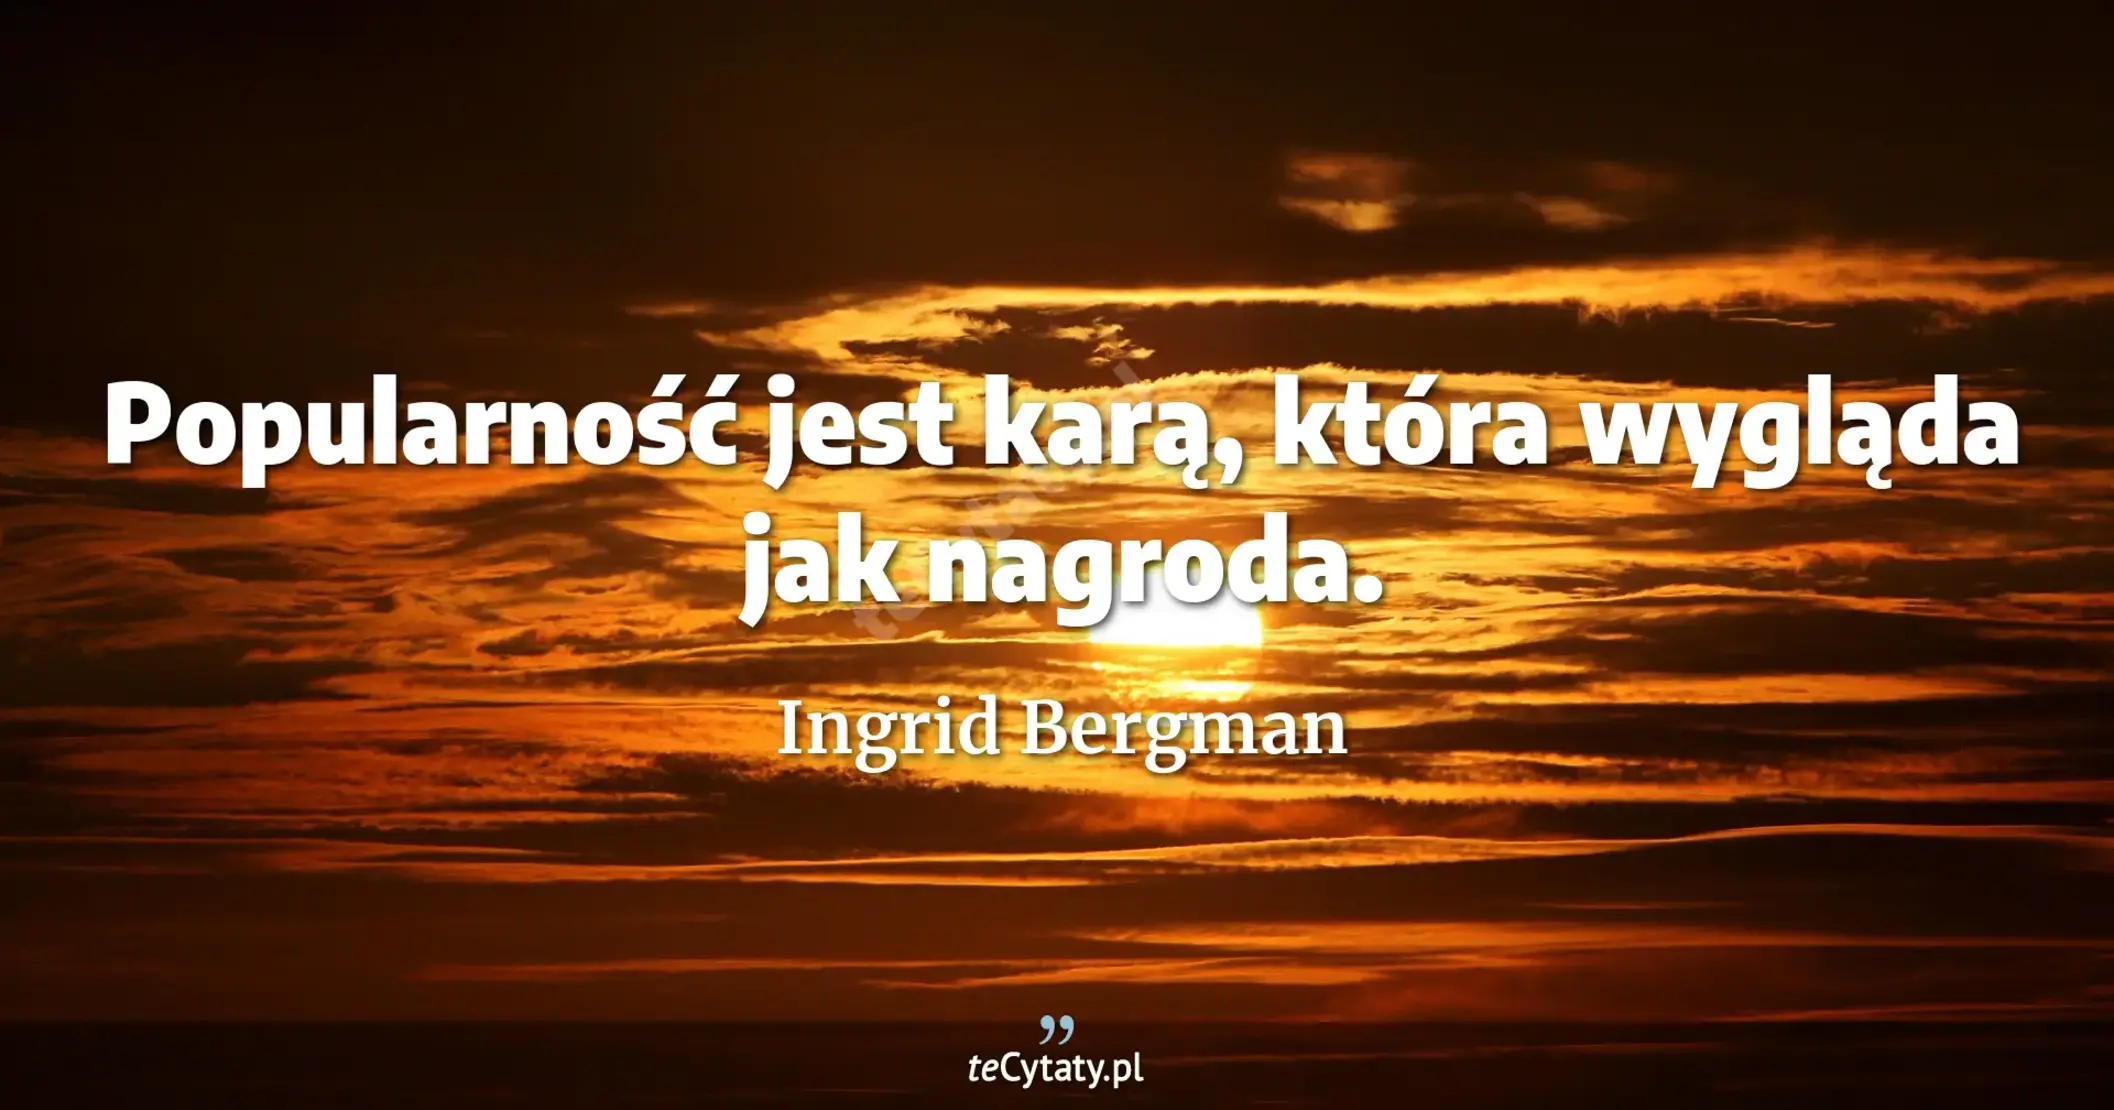 Popularność jest karą, która wygląda jak nagroda. - Ingrid Bergman